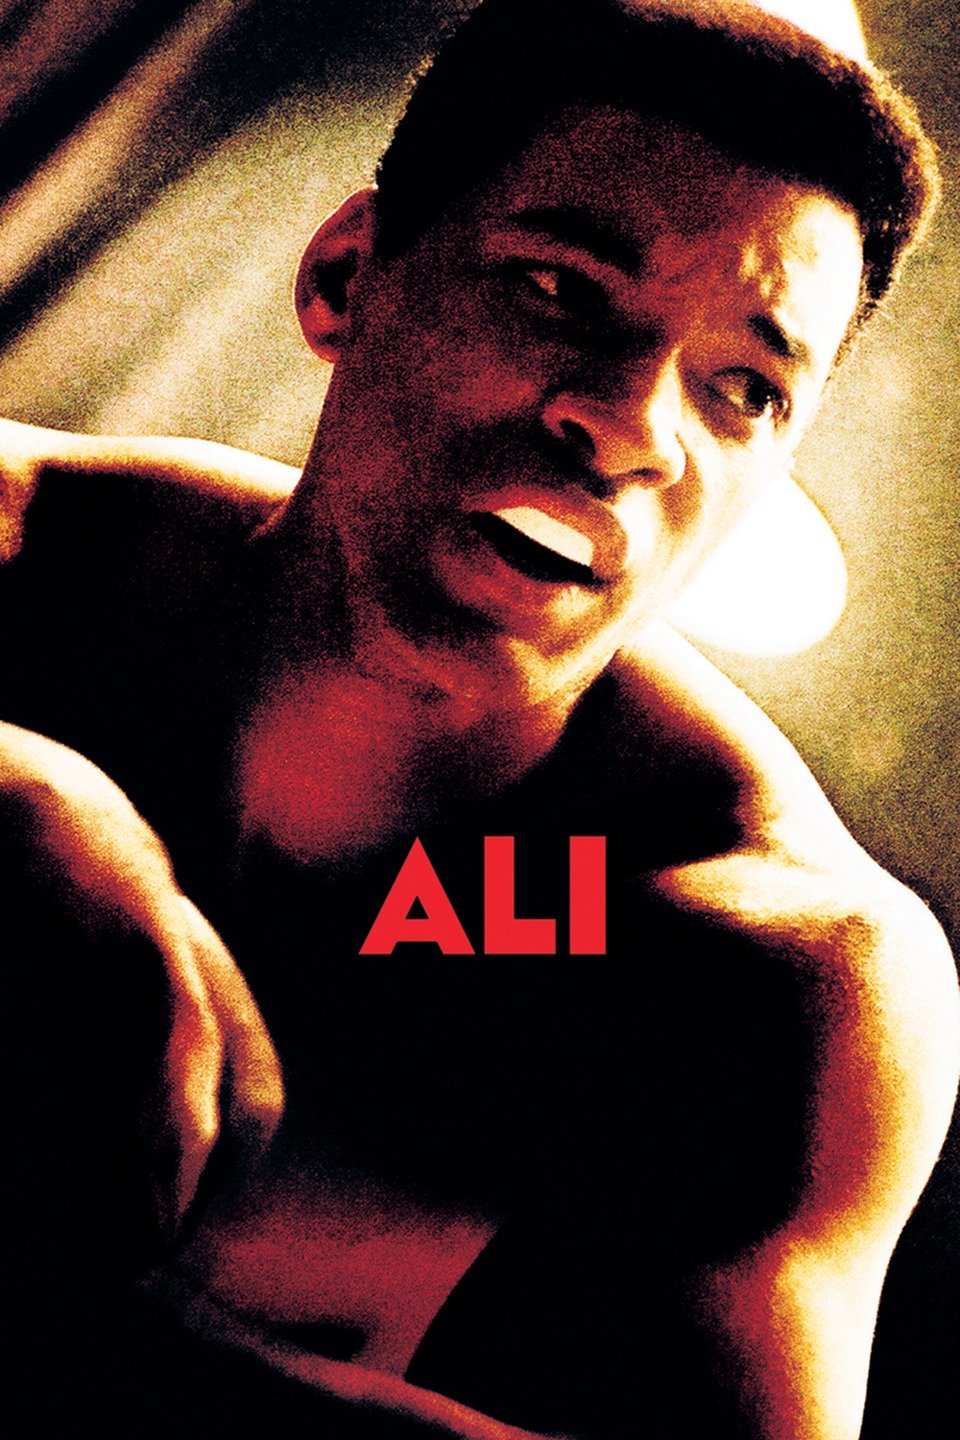 [MINI-HD] Ali (2001) อาลี กำปั้นท้าชนโลก [720p] [พากย์ไทย 5.1 + เสียงอังกฤษ 5.1] [ บรรยายไทย + อังกฤษ] [DVDRIP] [Master] [พากย์ไทย + ซับไทย] [ONE2UP]